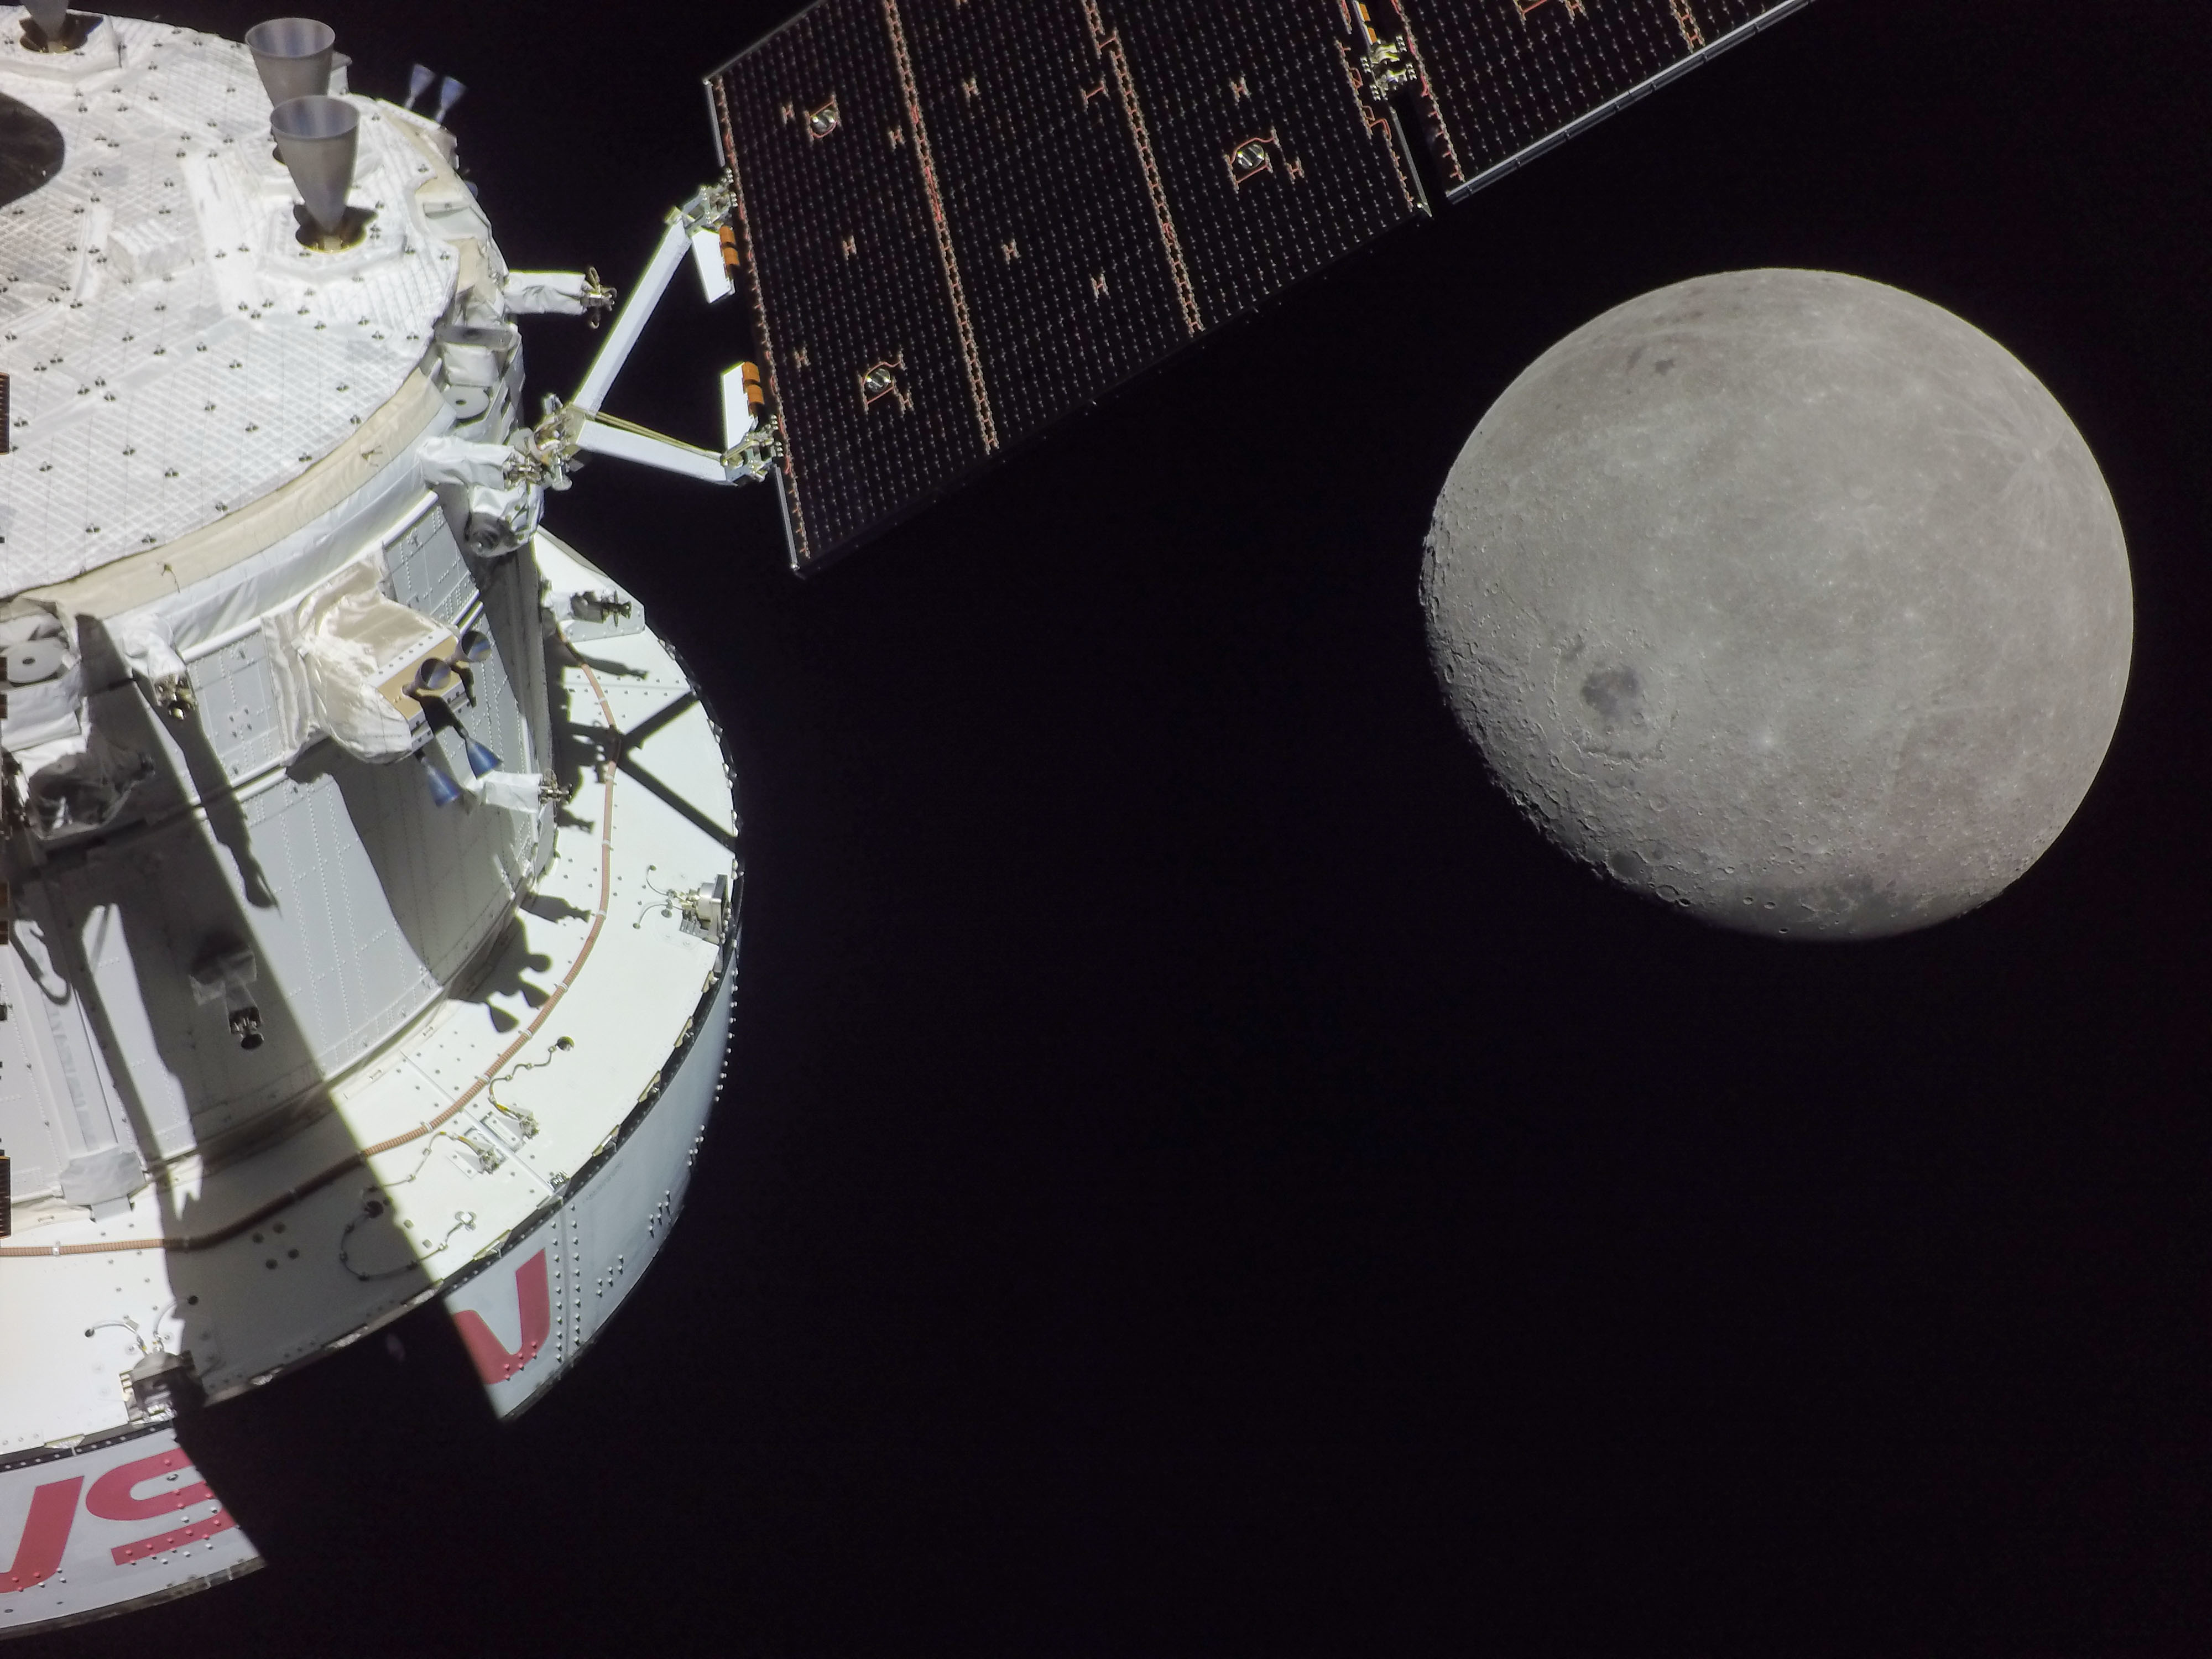 Una foto proporcionada por la Nasa muestra la nave espacial Orión durante una aproximación final a la Luna el 5 de diciembre de 2022, en una imagen tomada desde una cámara montada en uno de sus paneles solares. (Foto Prensa Libre: Nasa / The New York Times)